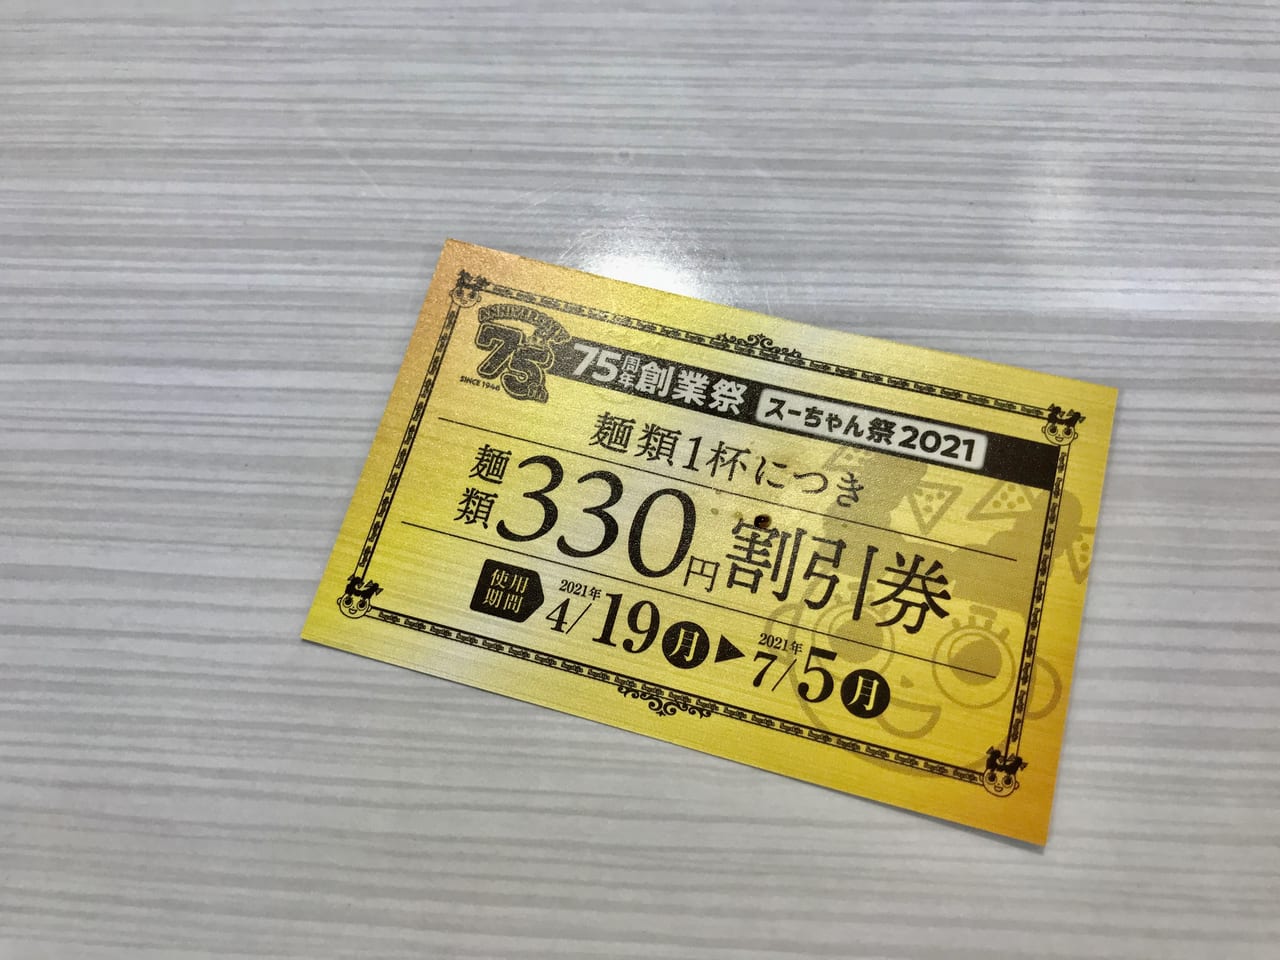 １杯注文で３３０円割引チケット